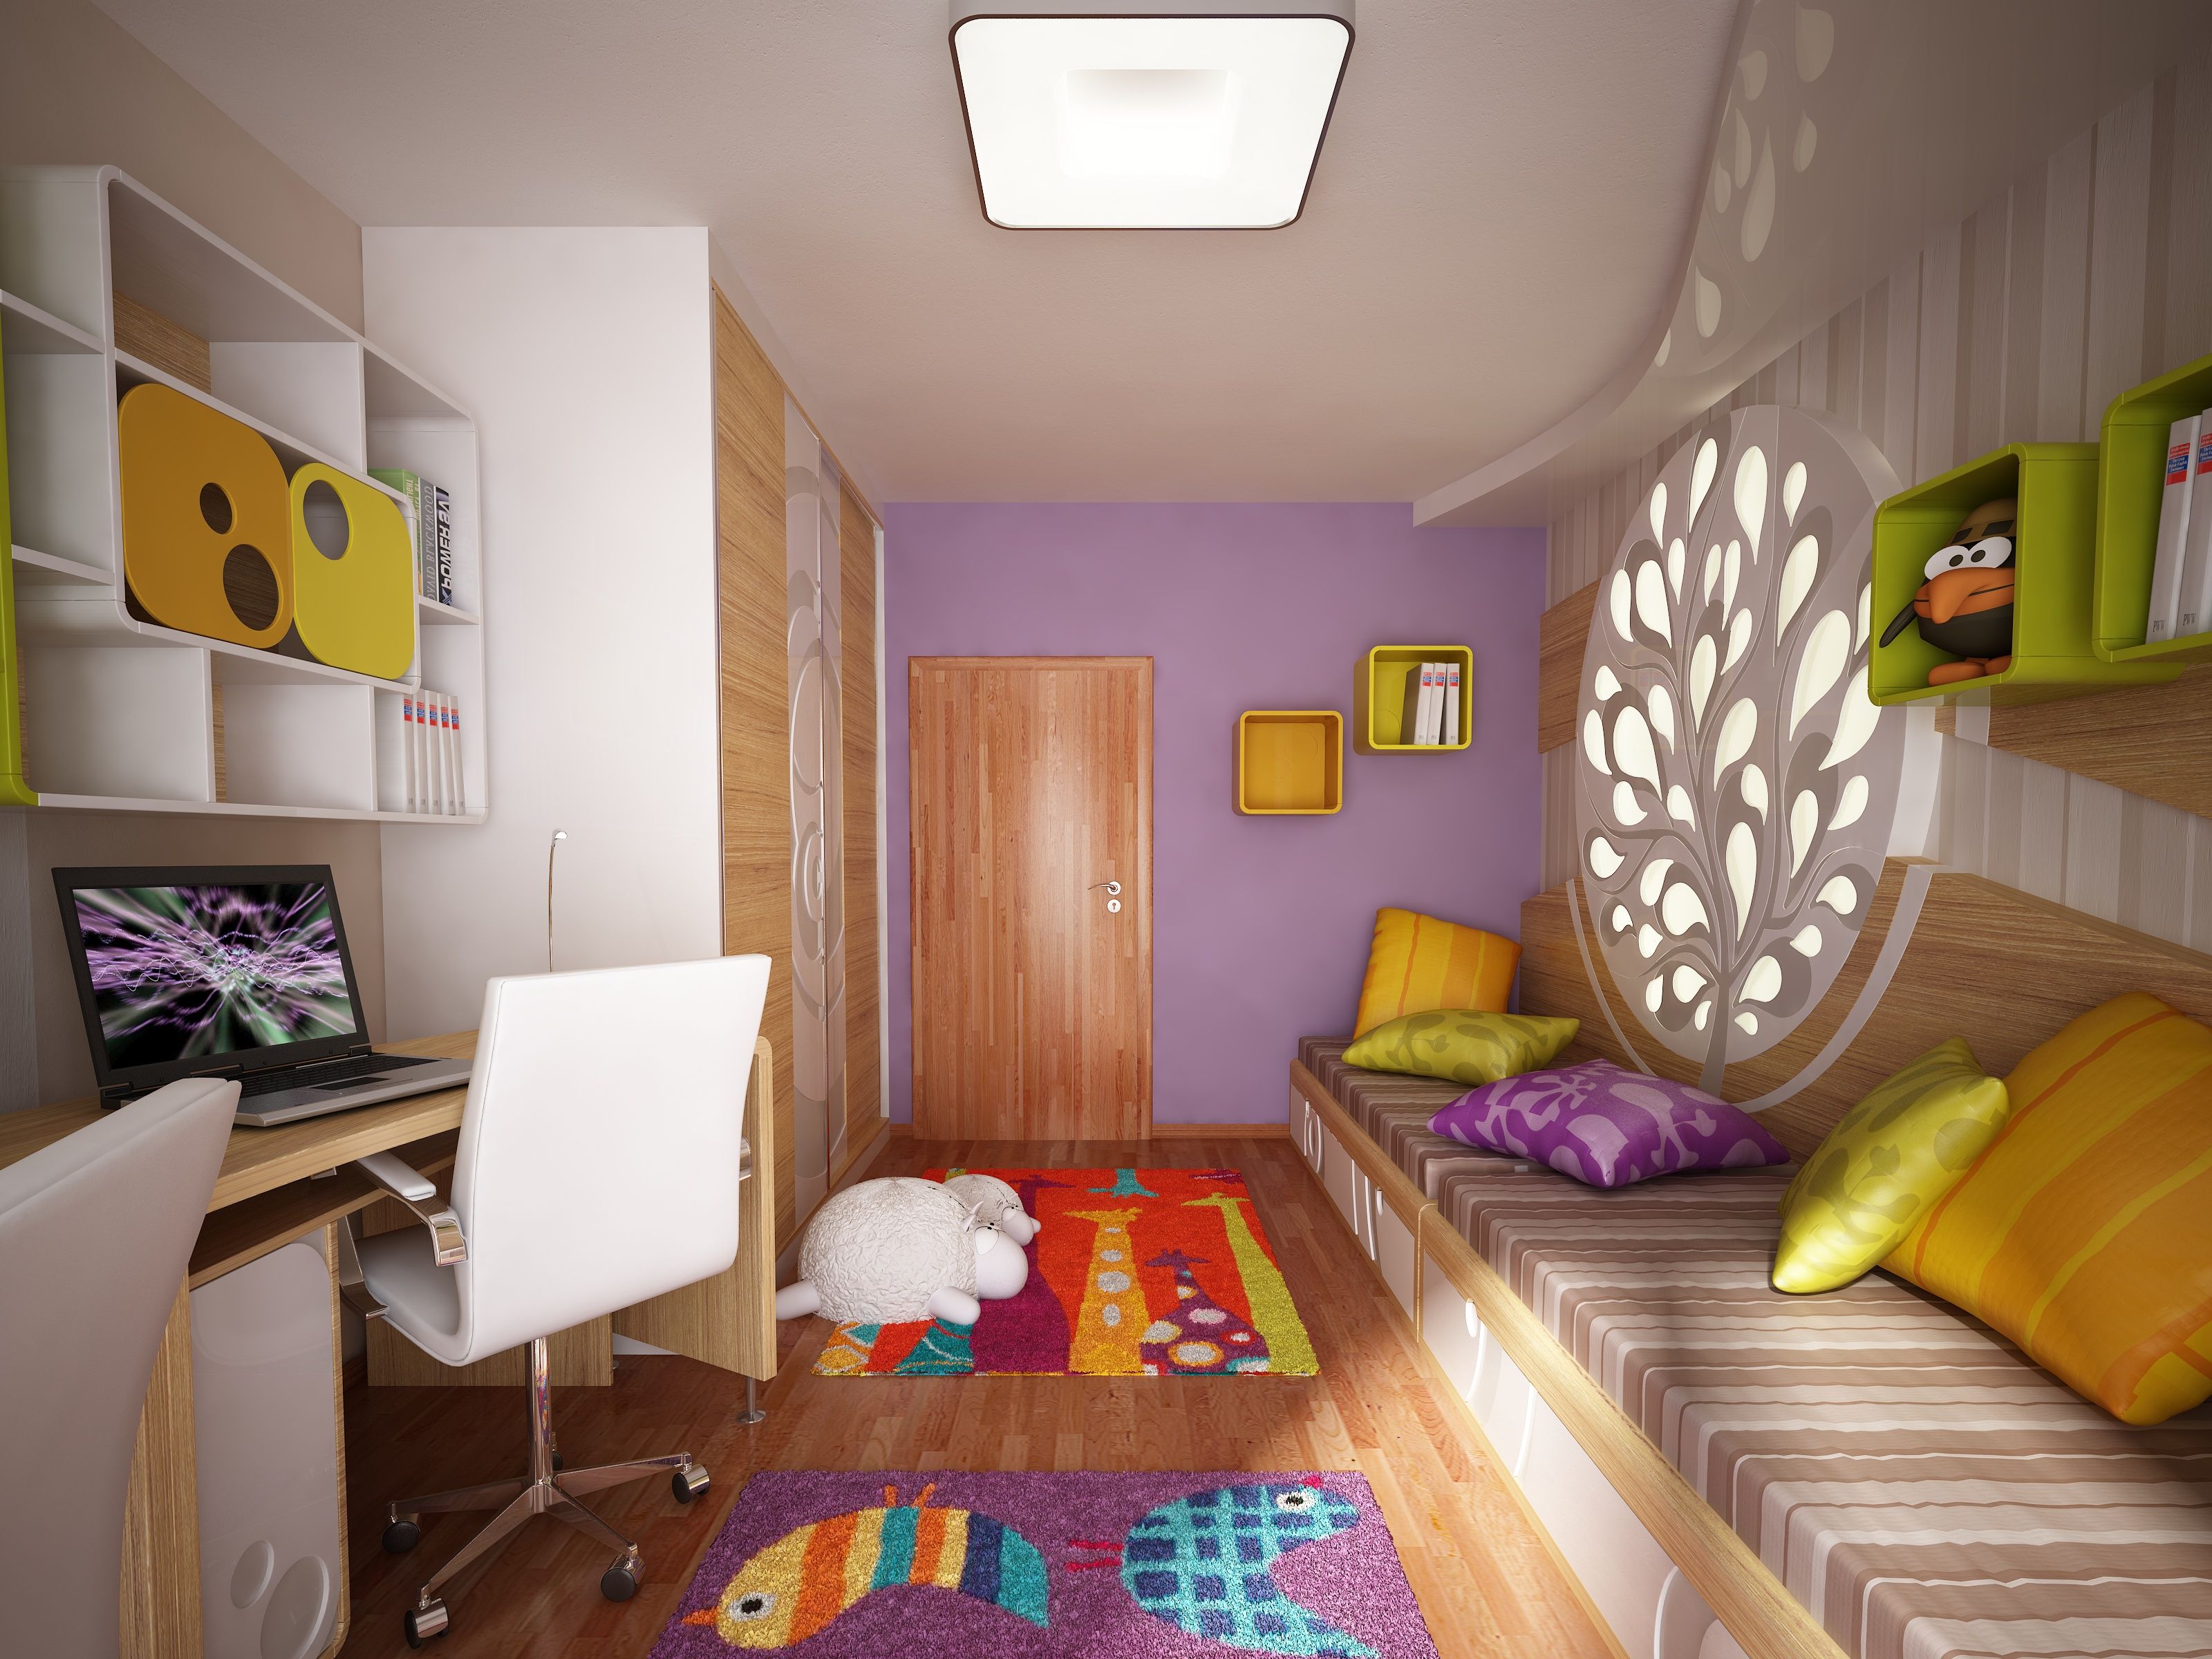 планировка комнаты с детской кроваткой и диваном